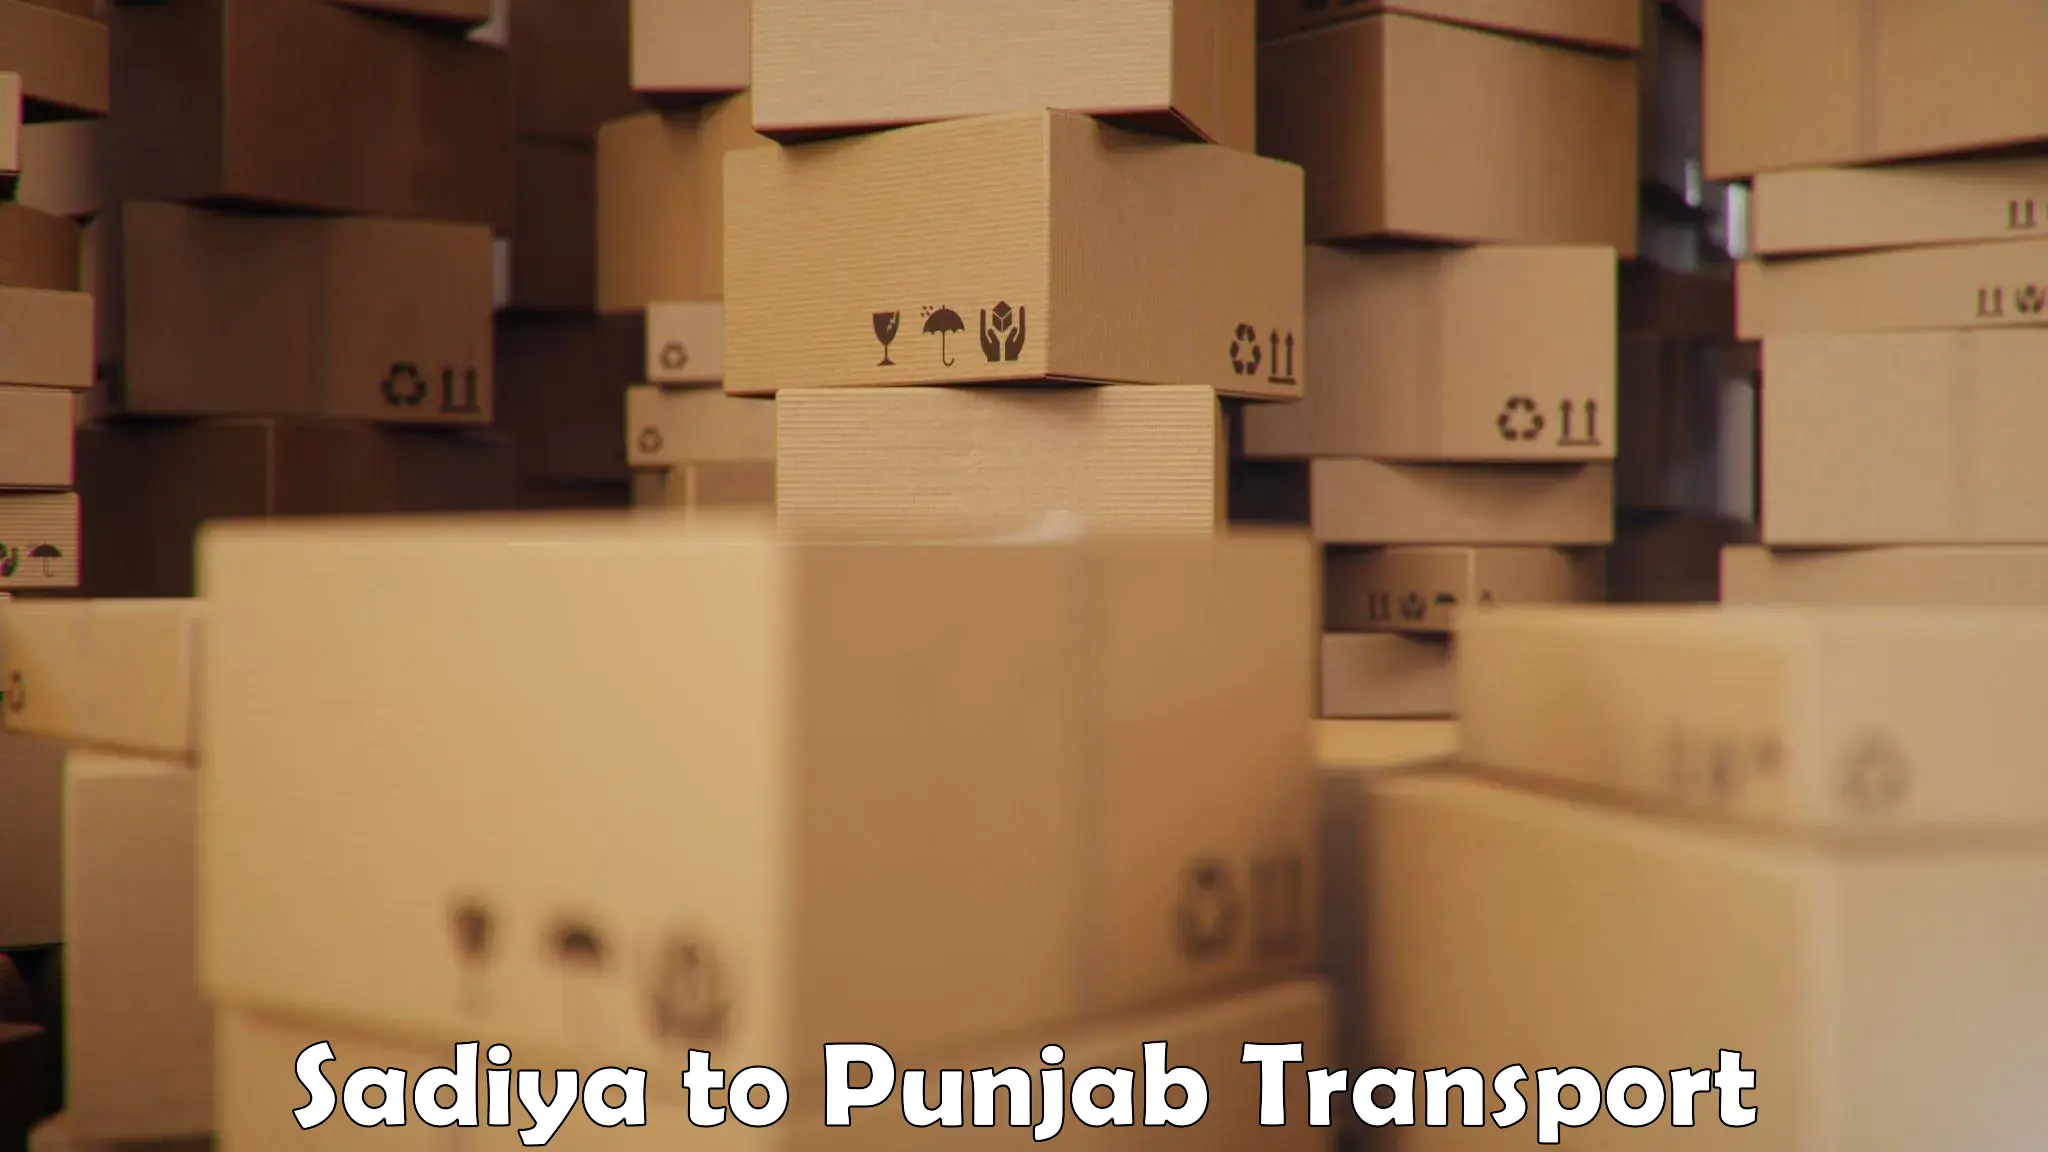 Part load transport service in India Sadiya to Zirakpur